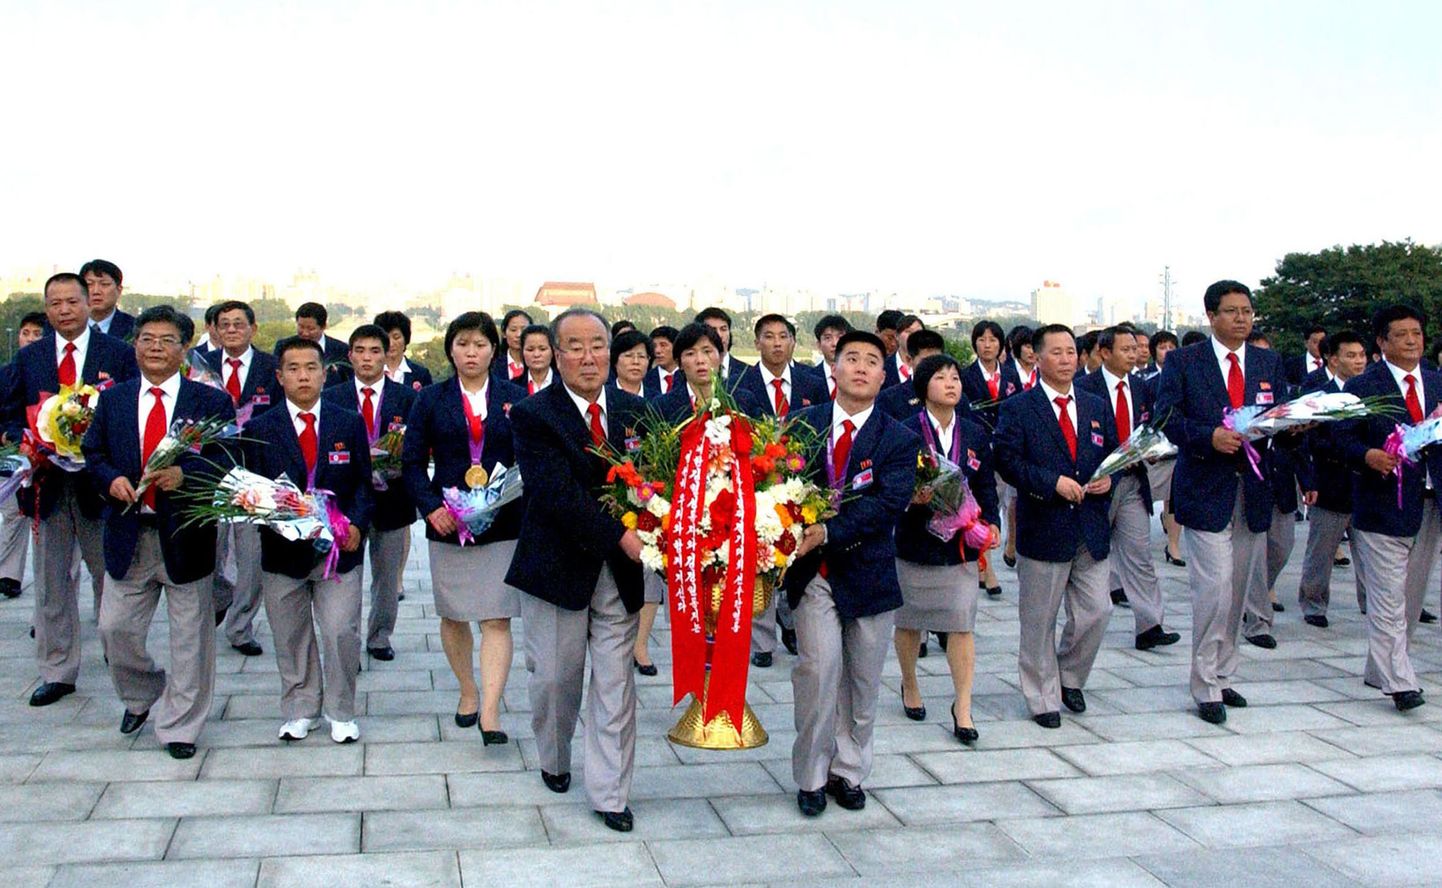 Põhja-Korea sportlased asetasid pärja Kim Il-Sungi ja Kim Jong-Ili ausammaste juurde.